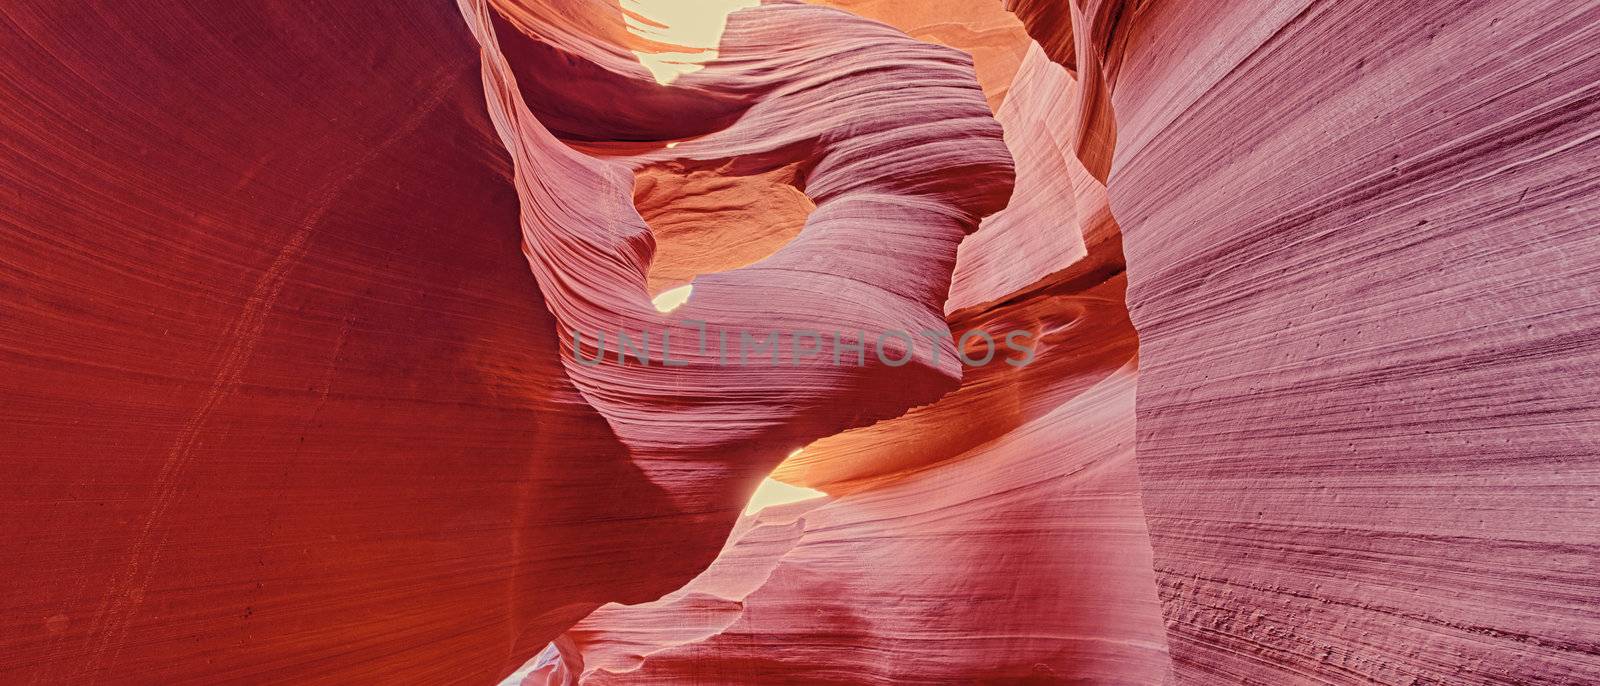 panoramic antelope canyon by vwalakte